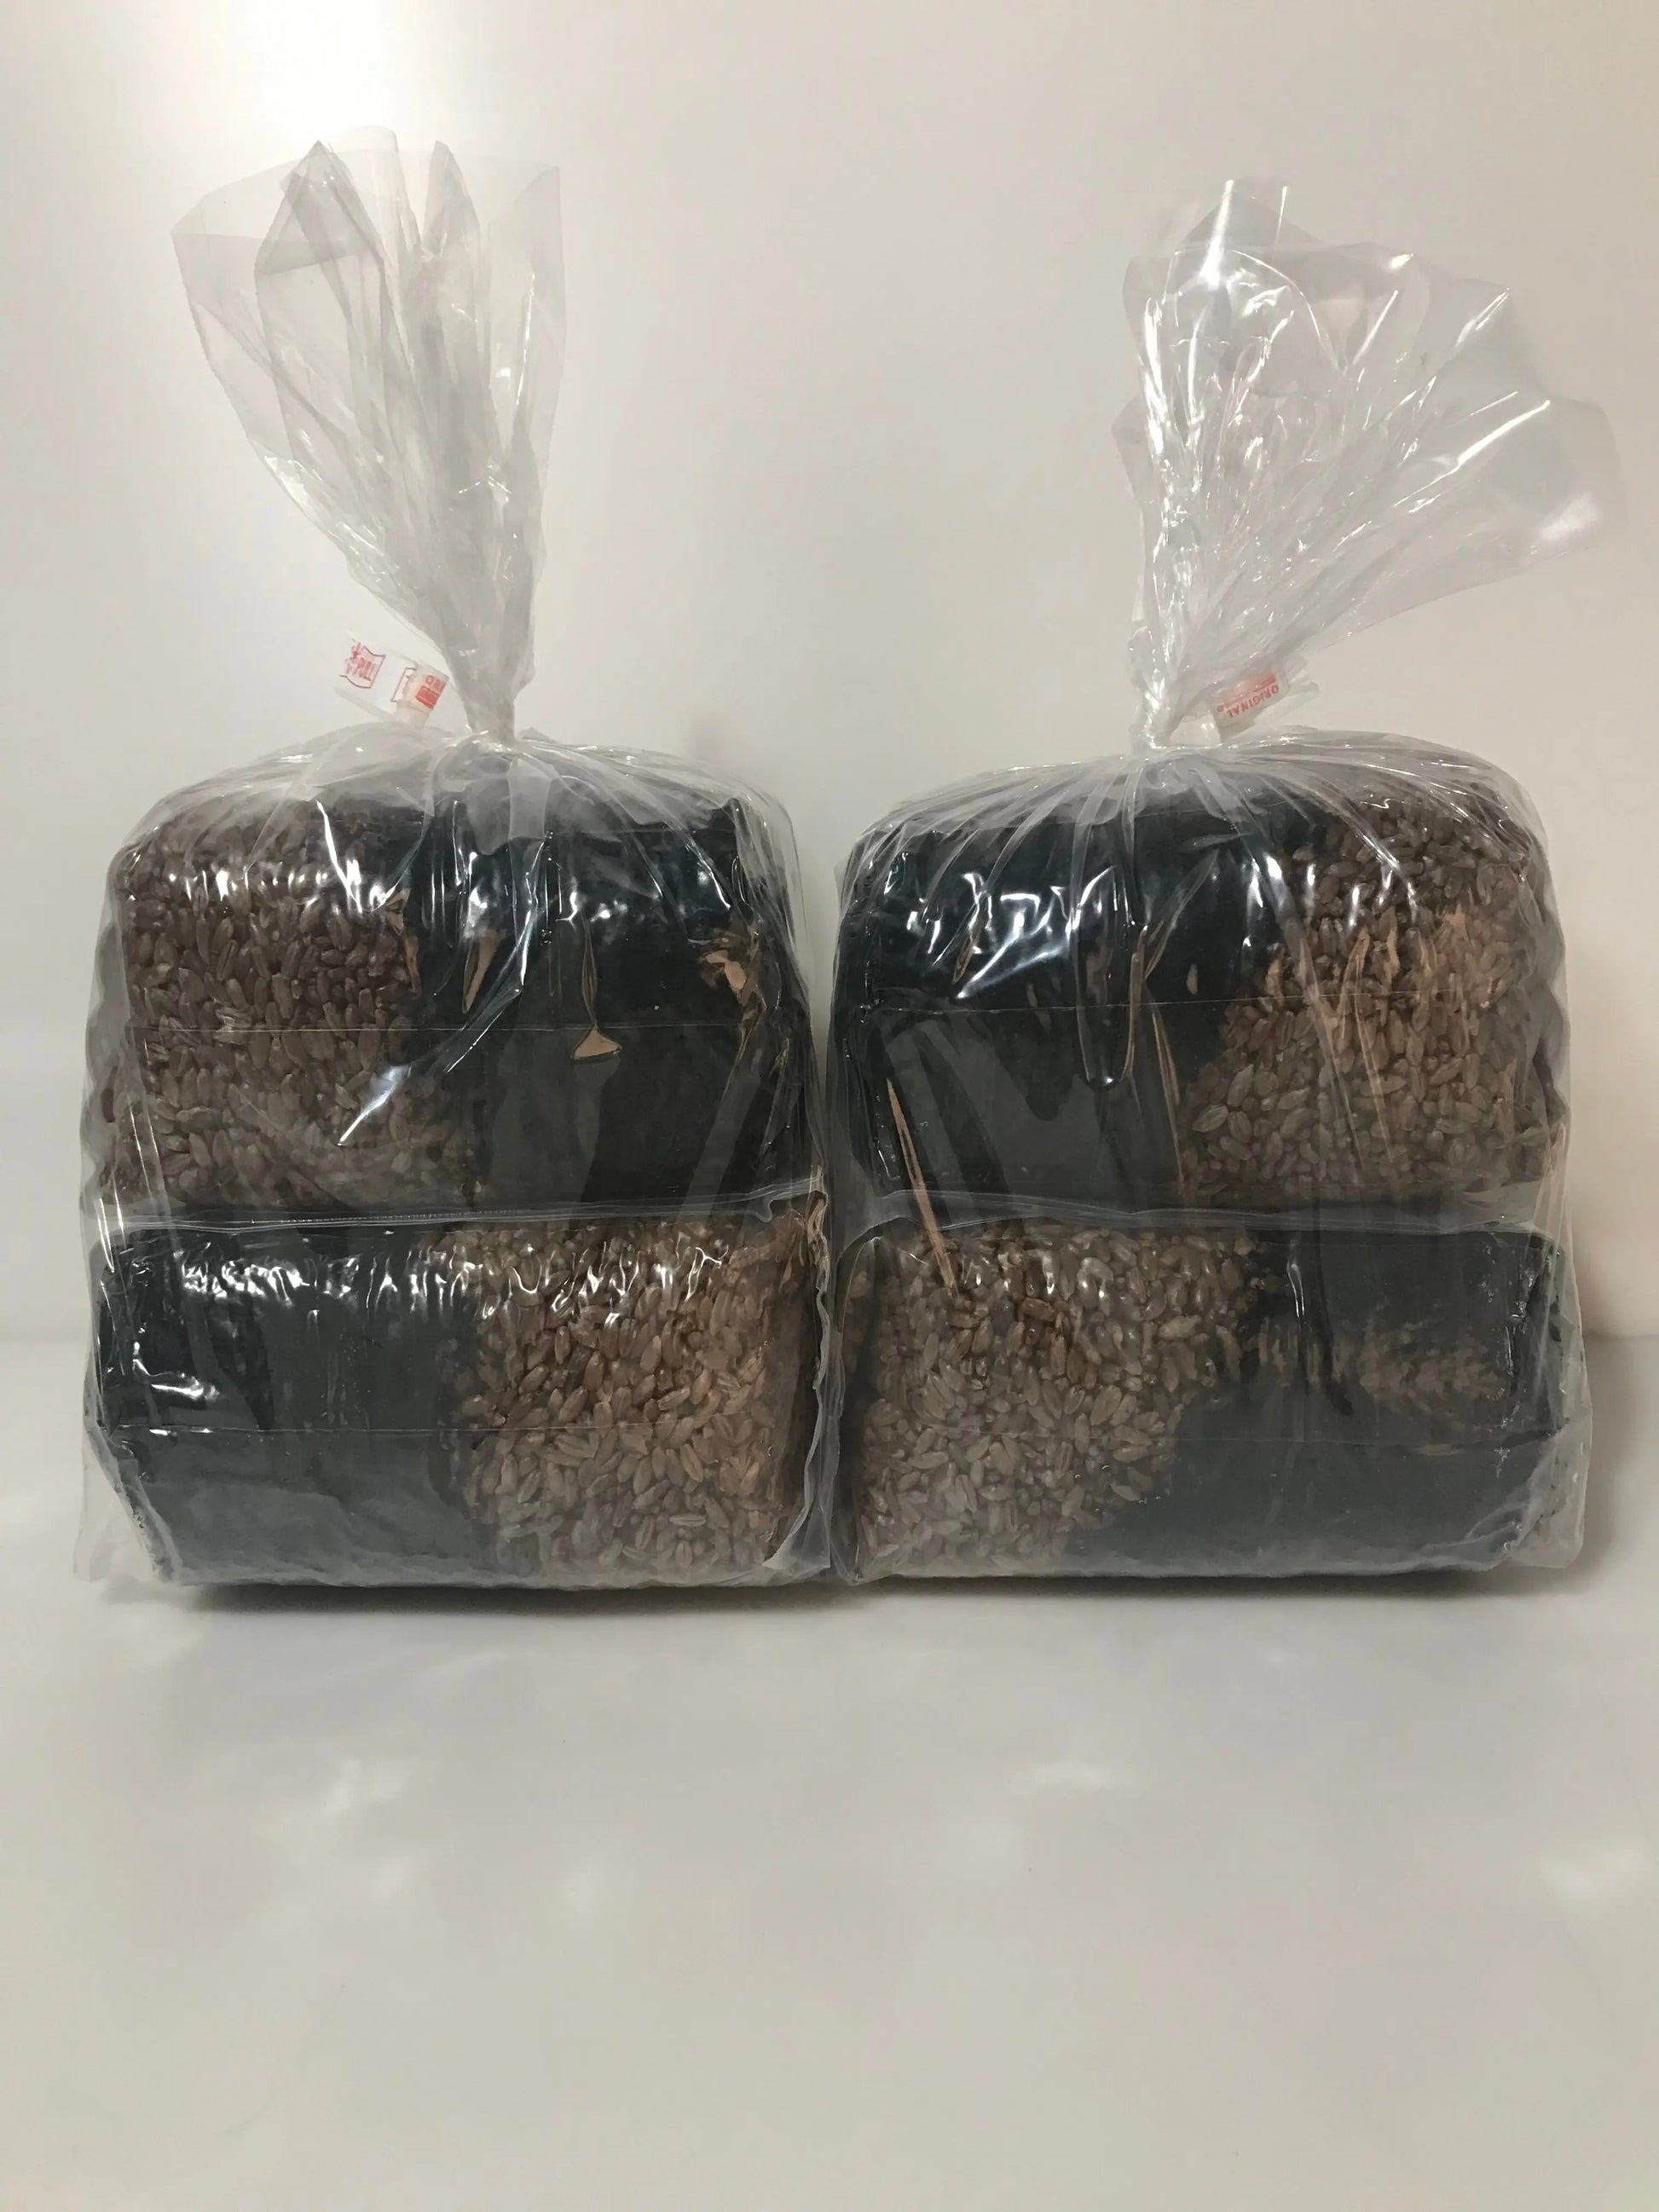 Mushroom Grow Kit - 4 Pack - All In One Grow Bags Mushroom Spawn Store